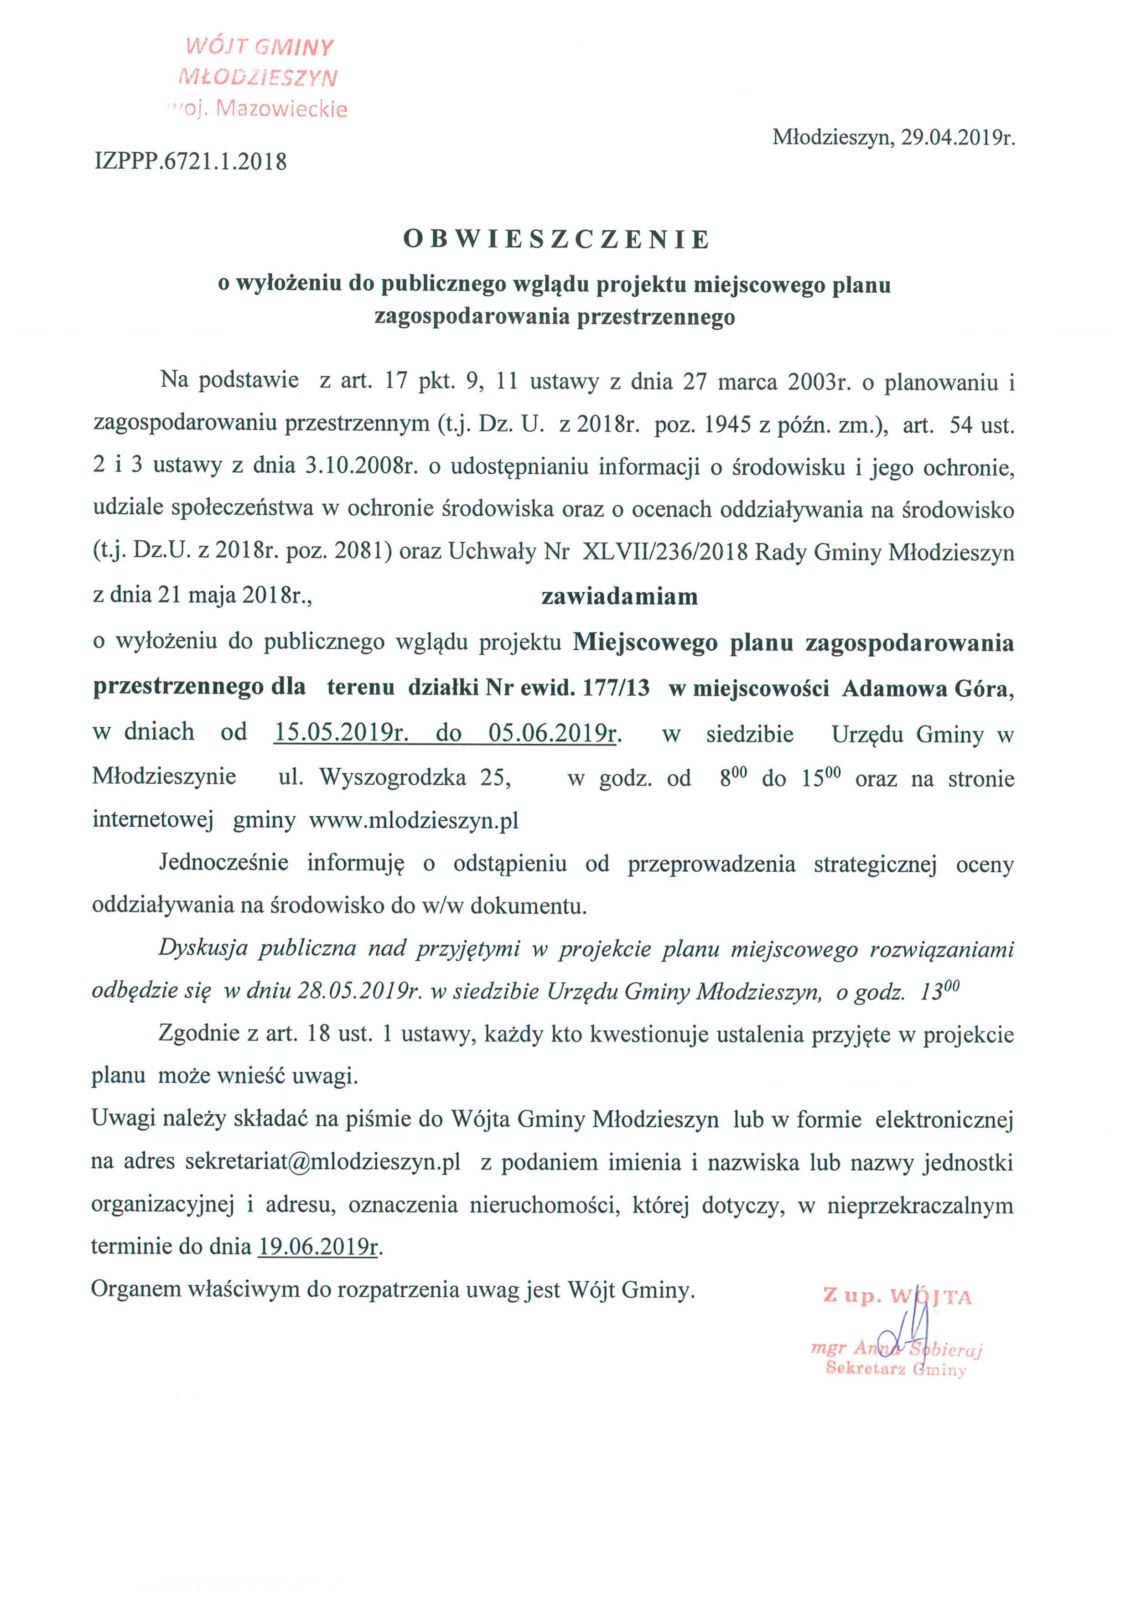 Obwieszczenie o wyłożeniu do publicznego wglądu projektu Miejscowego planu zagospodarowania przestrzennego dla terenu  działki 177/13 w miejscowości Adamowa Góra.